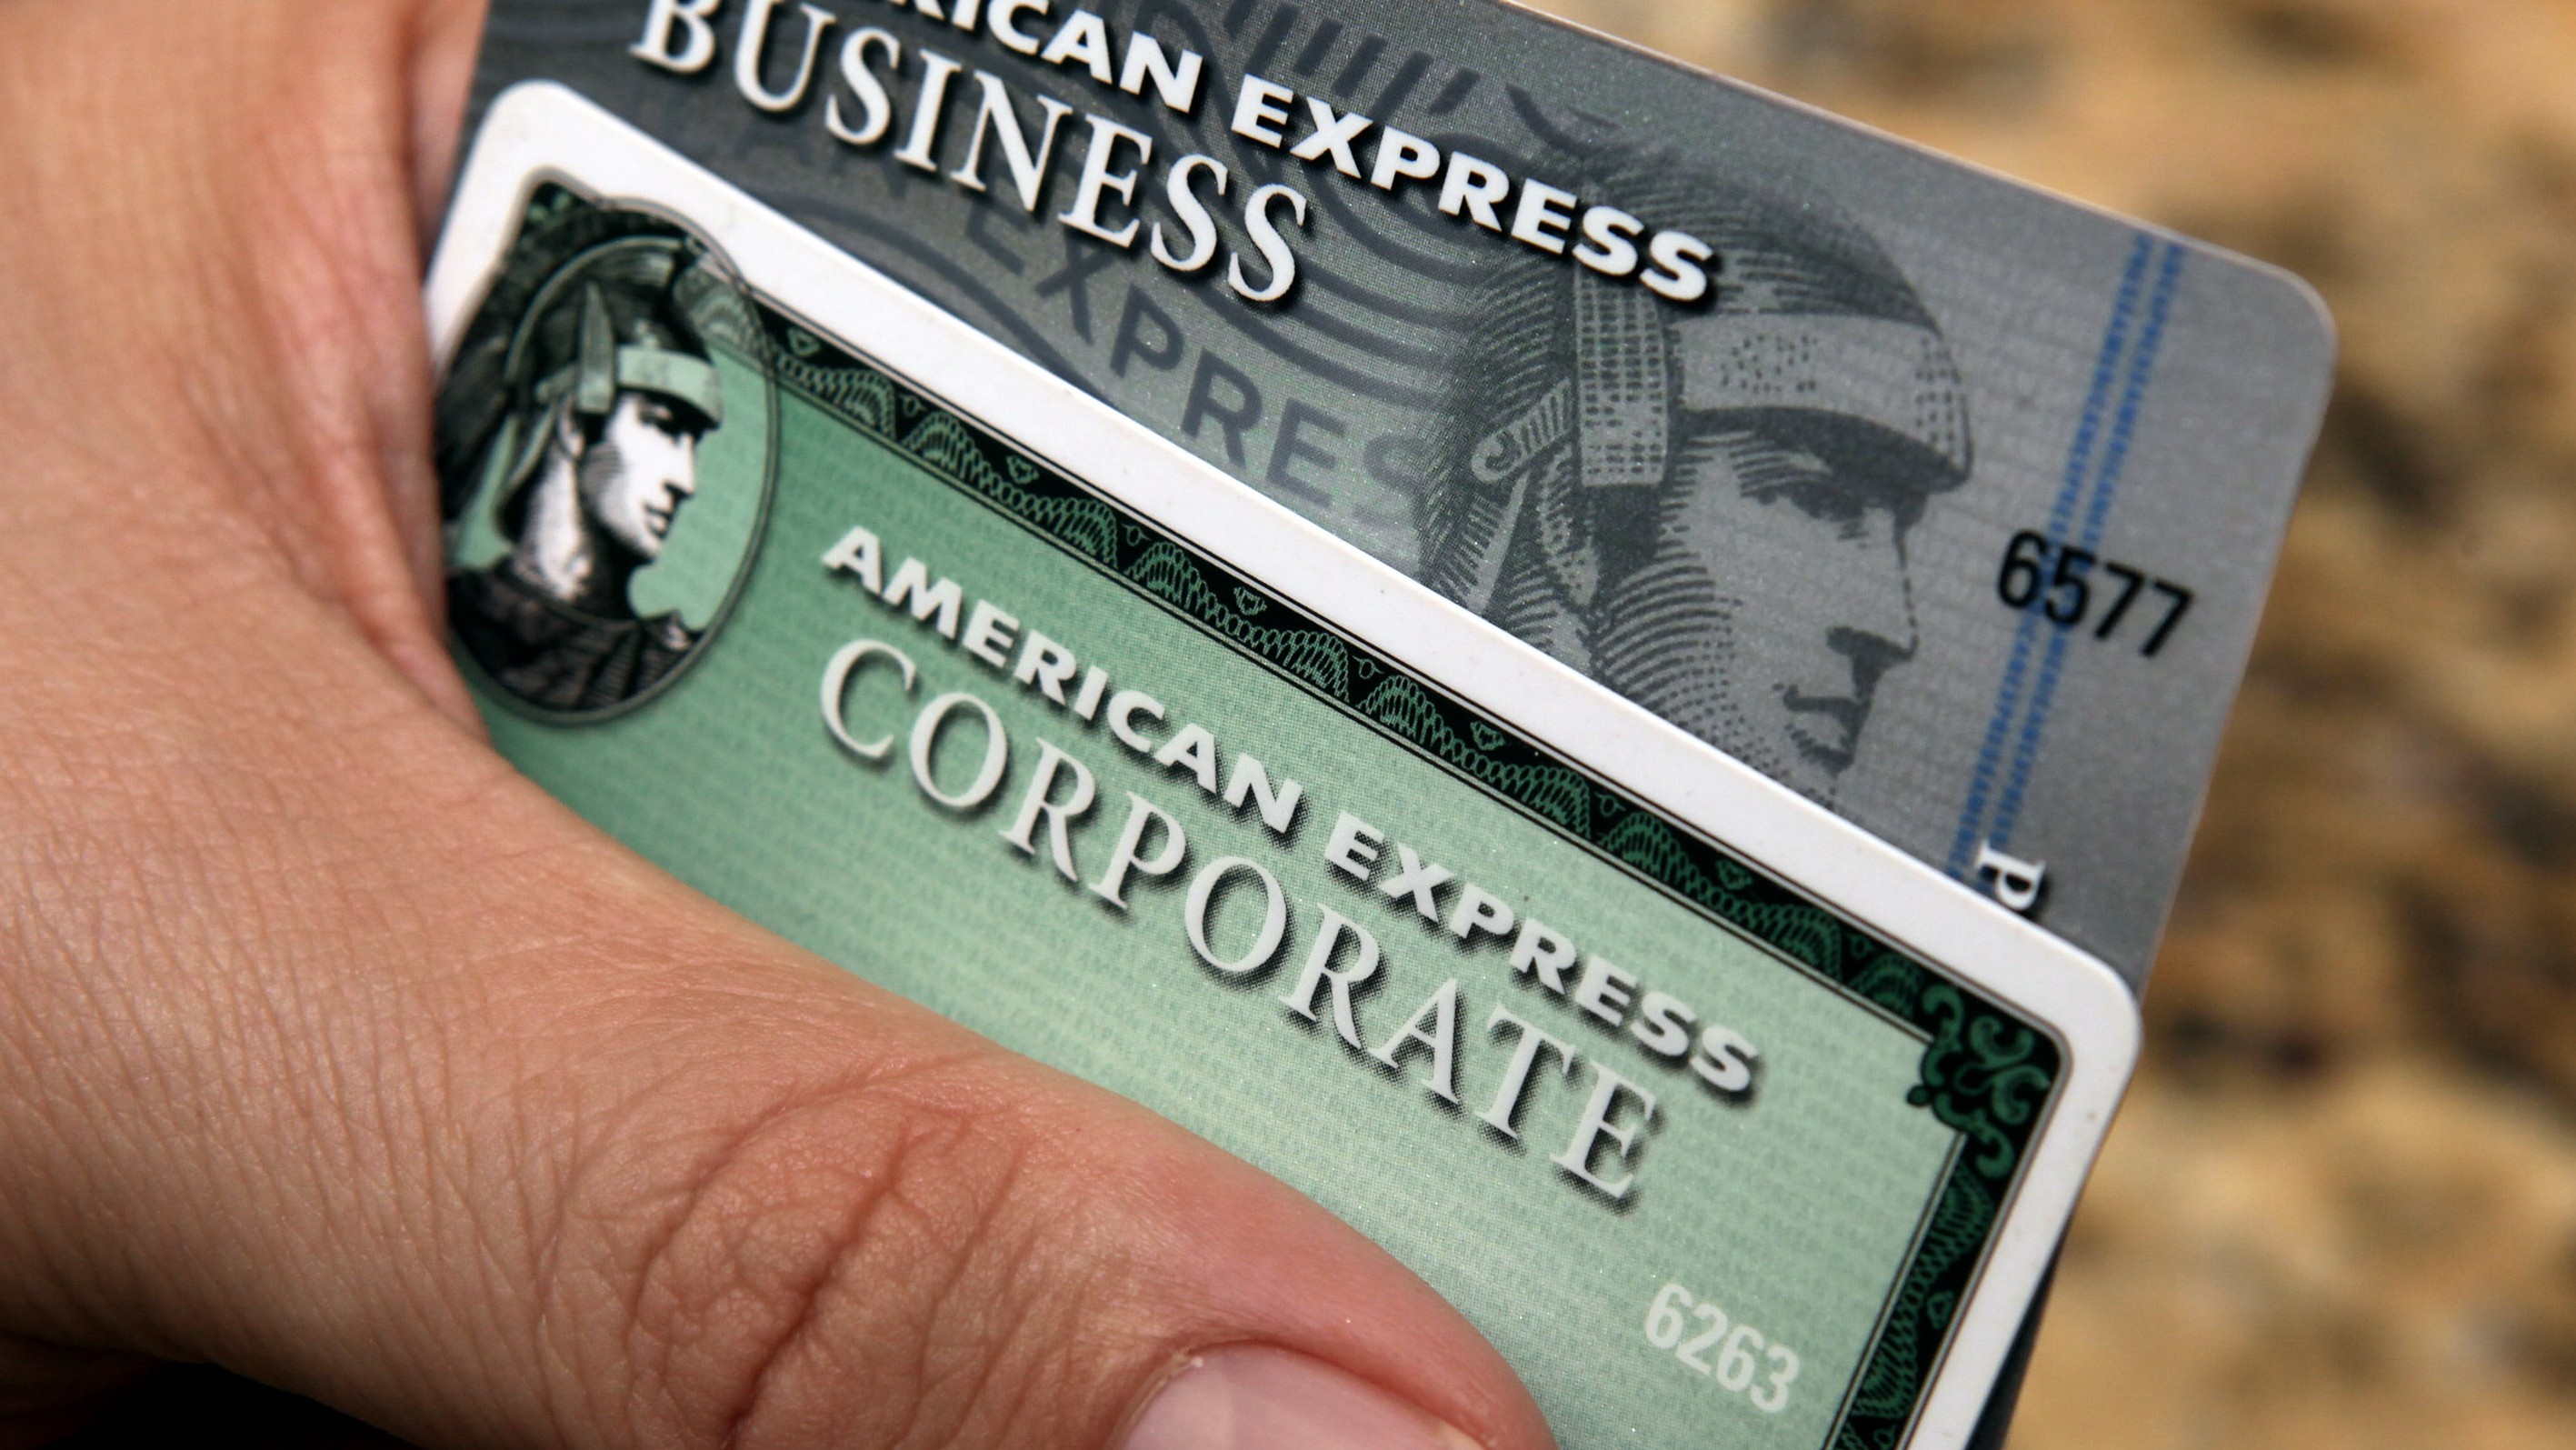 American Express будет конкурировать с Visa и MasterCard в России